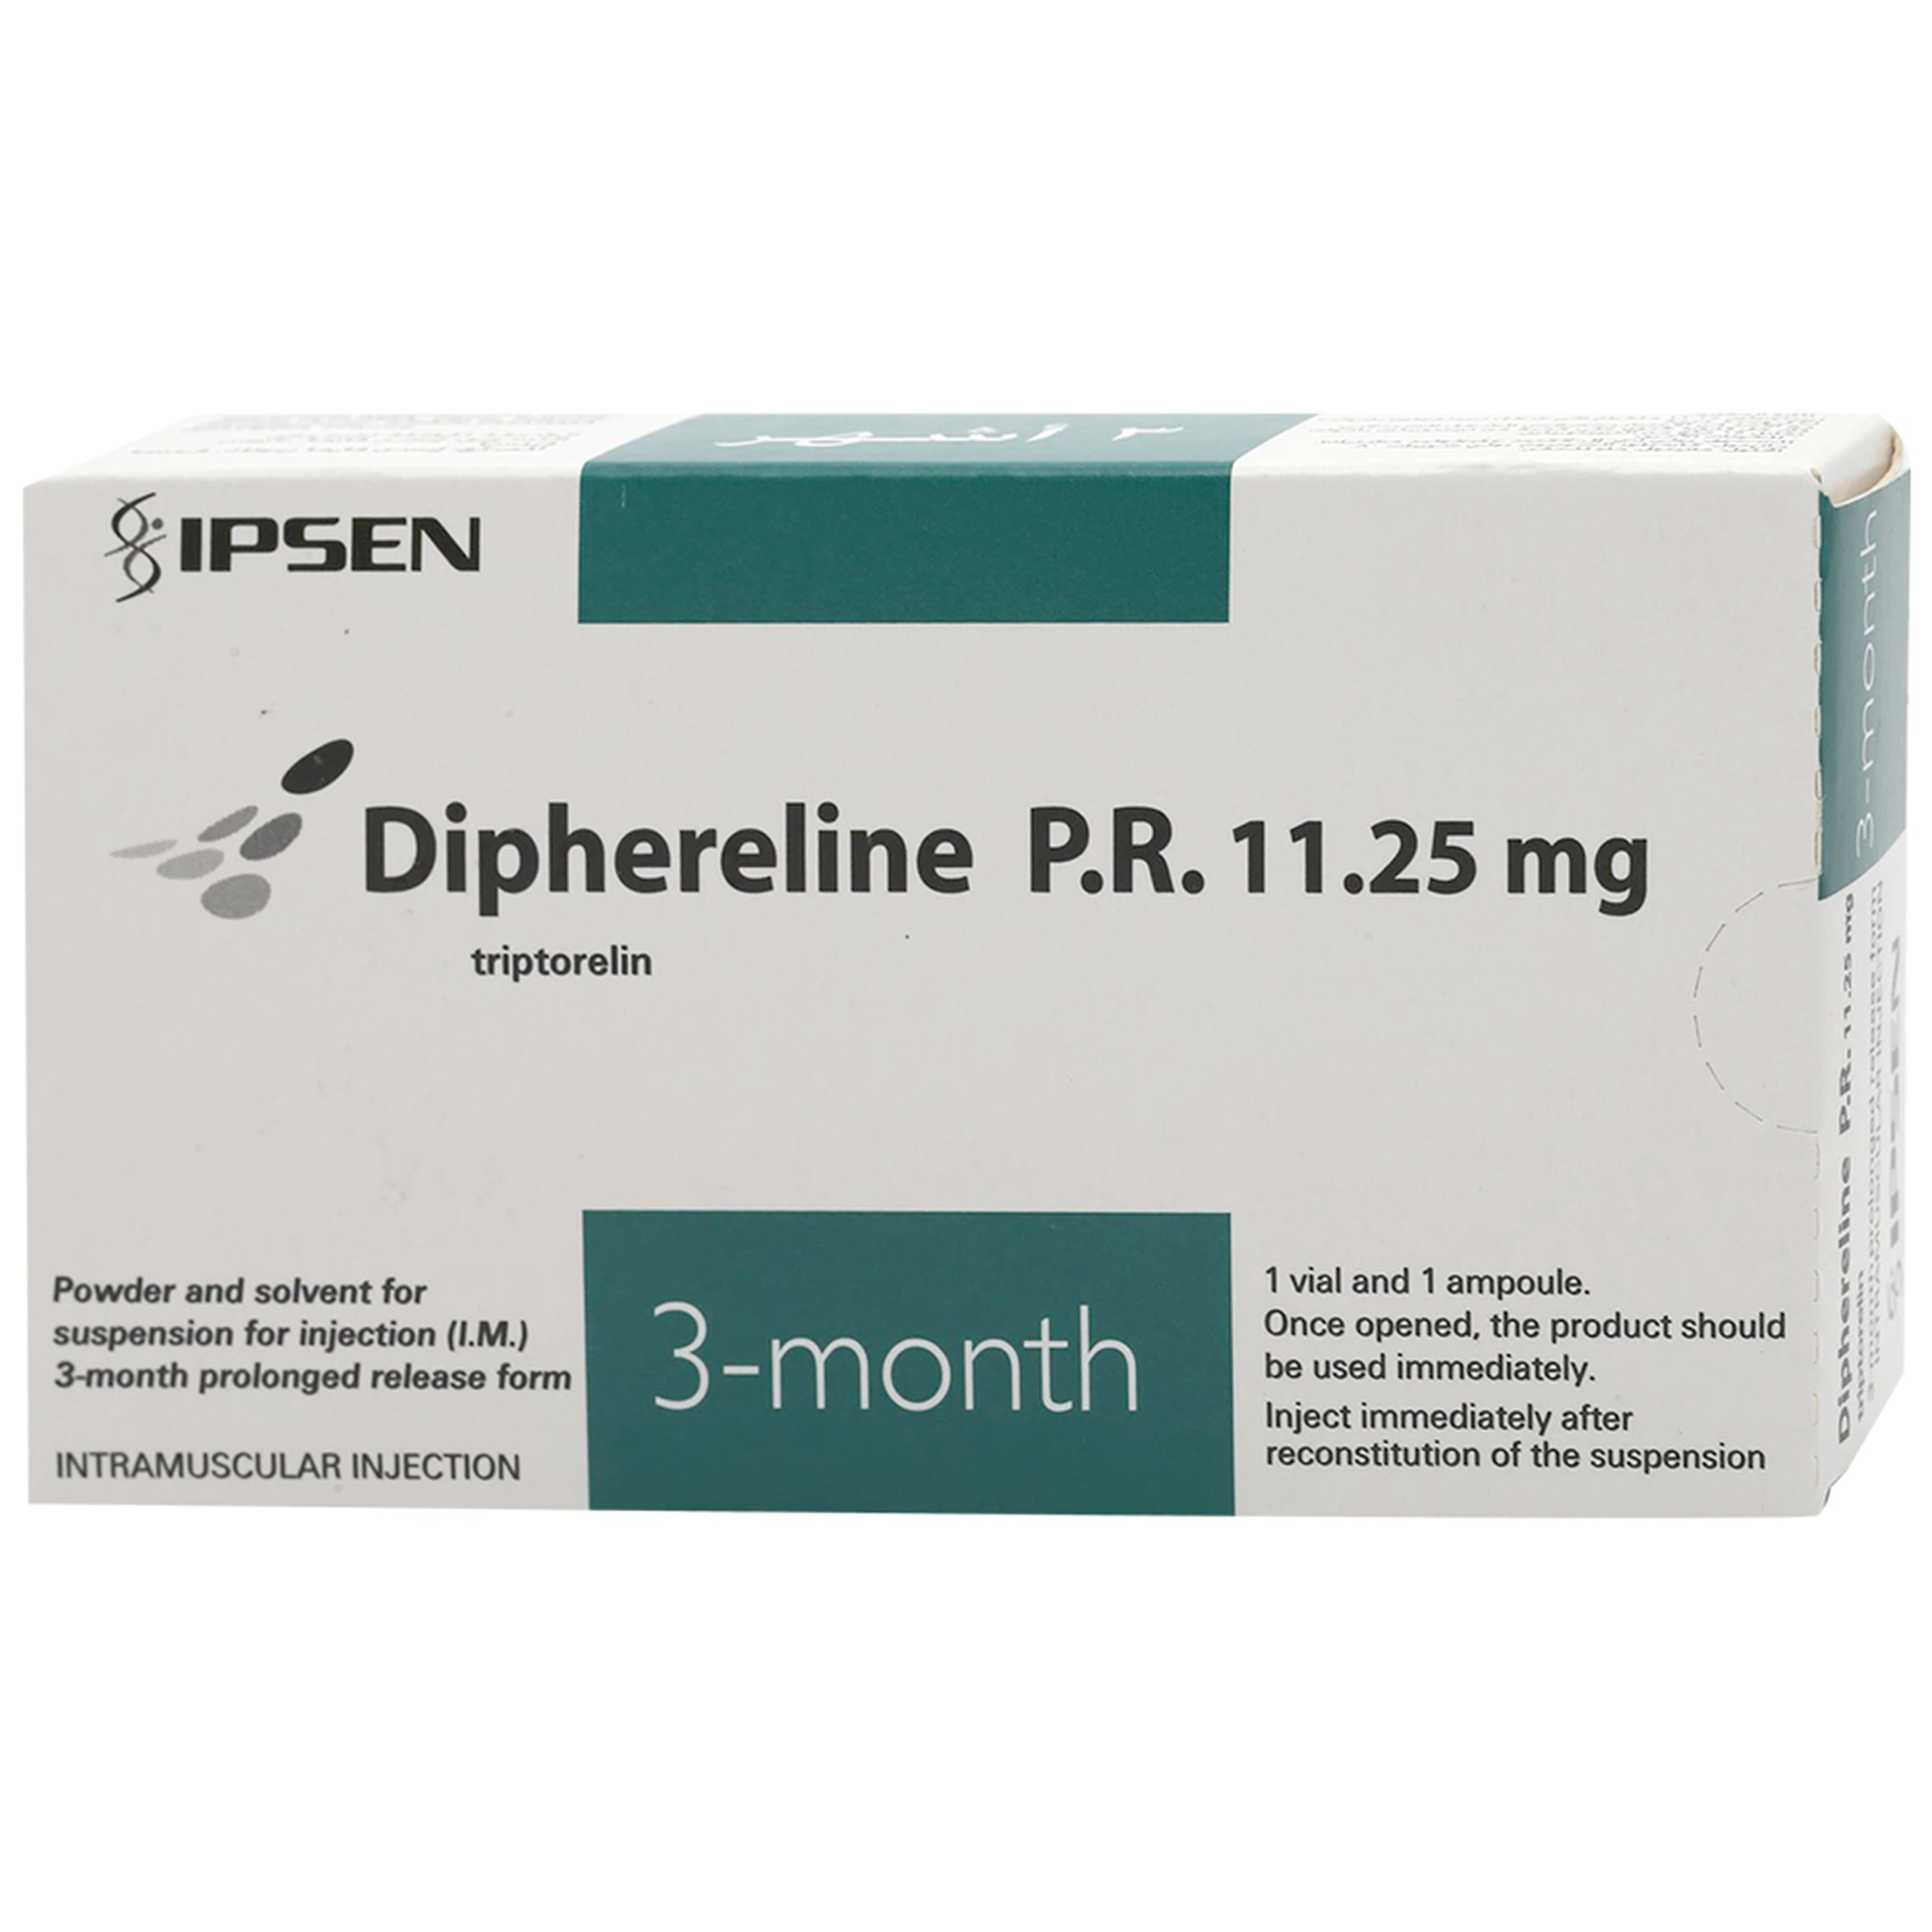 Thuốc Diphereline P.R. 11.25mg Ipsen điều trị ung thư tuyến tiền liệt, lạc nội mạc tử cung